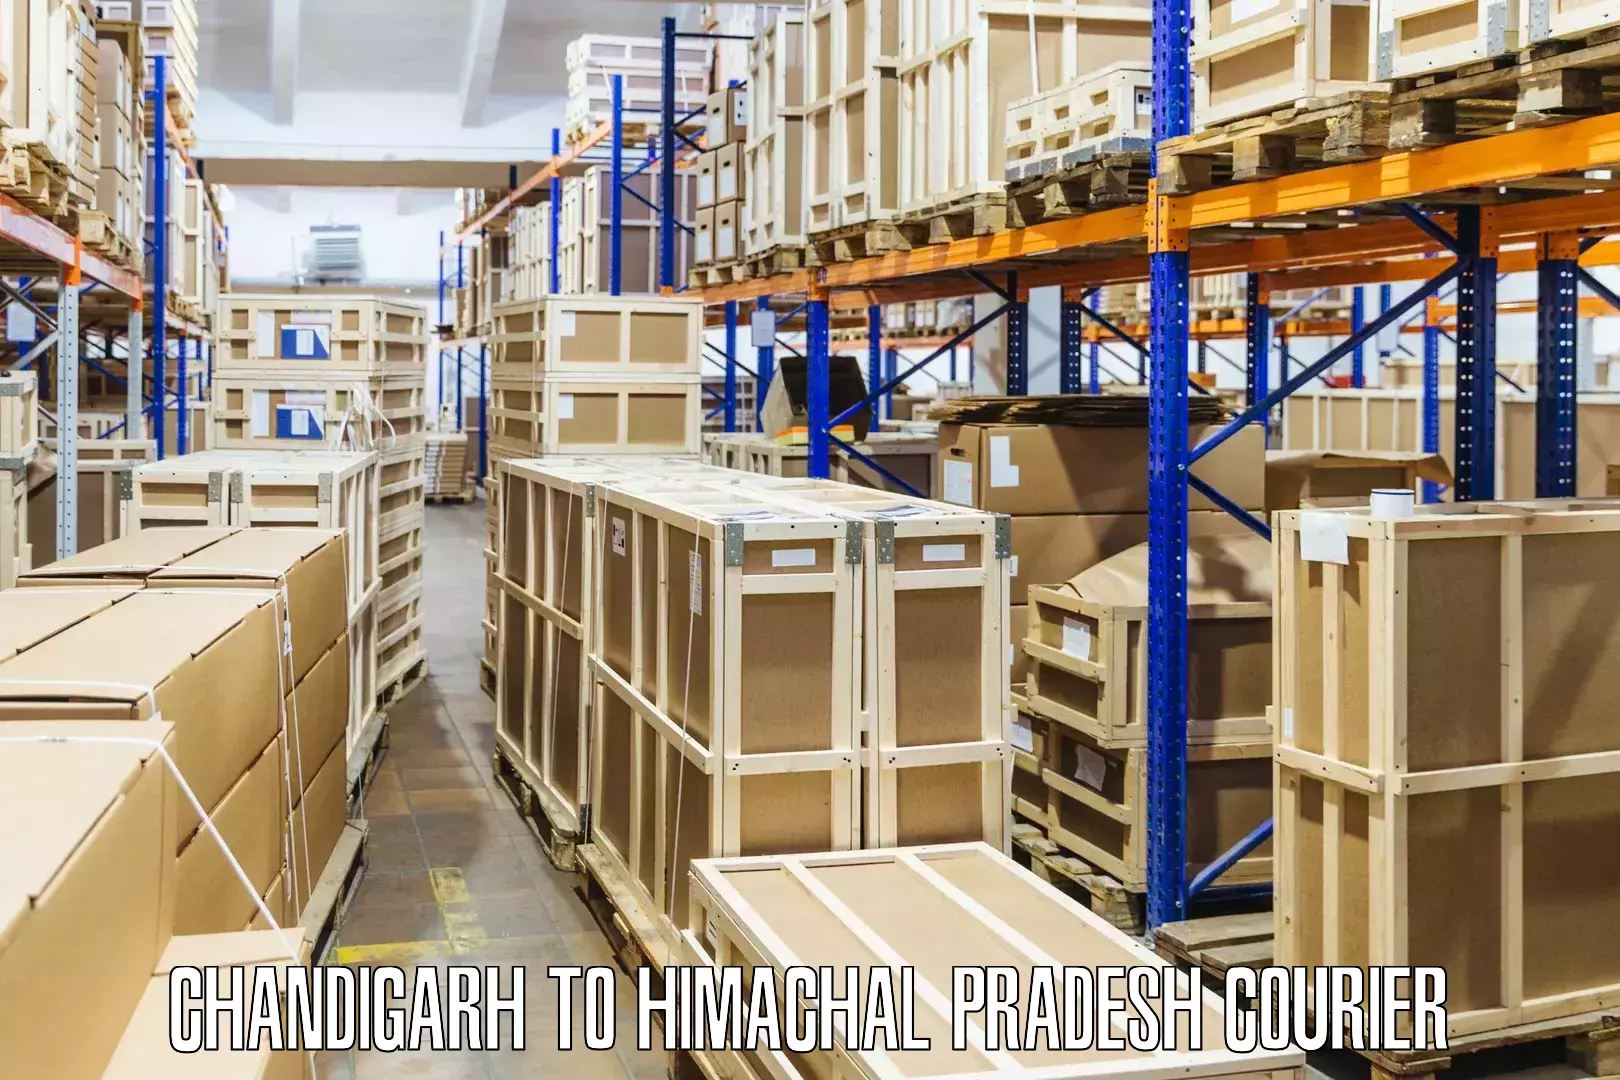 Efficient freight service Chandigarh to Banjar